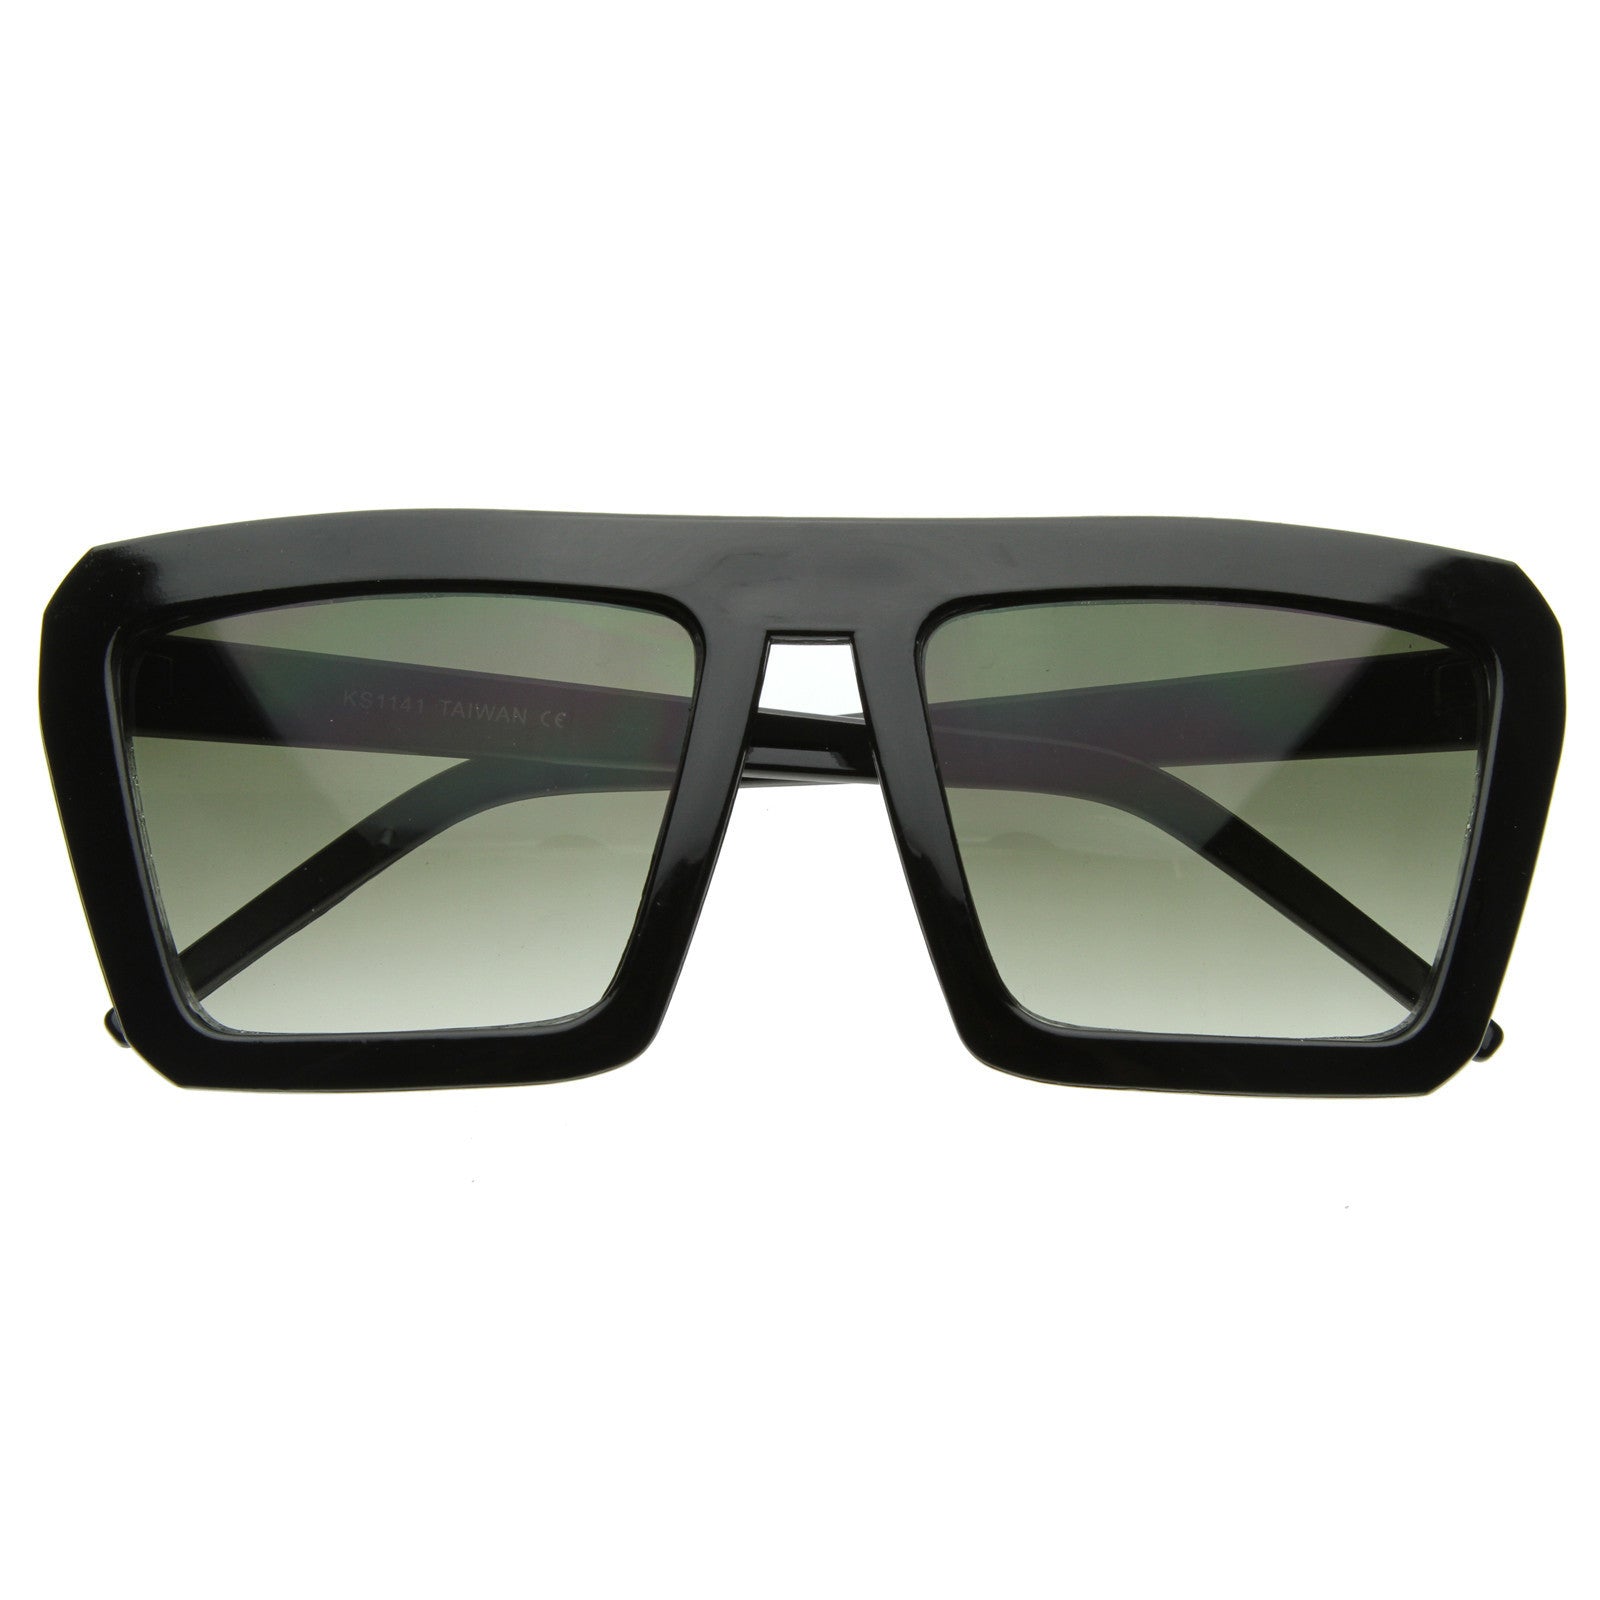 Unisex Flat Top Square Sunglasses Black